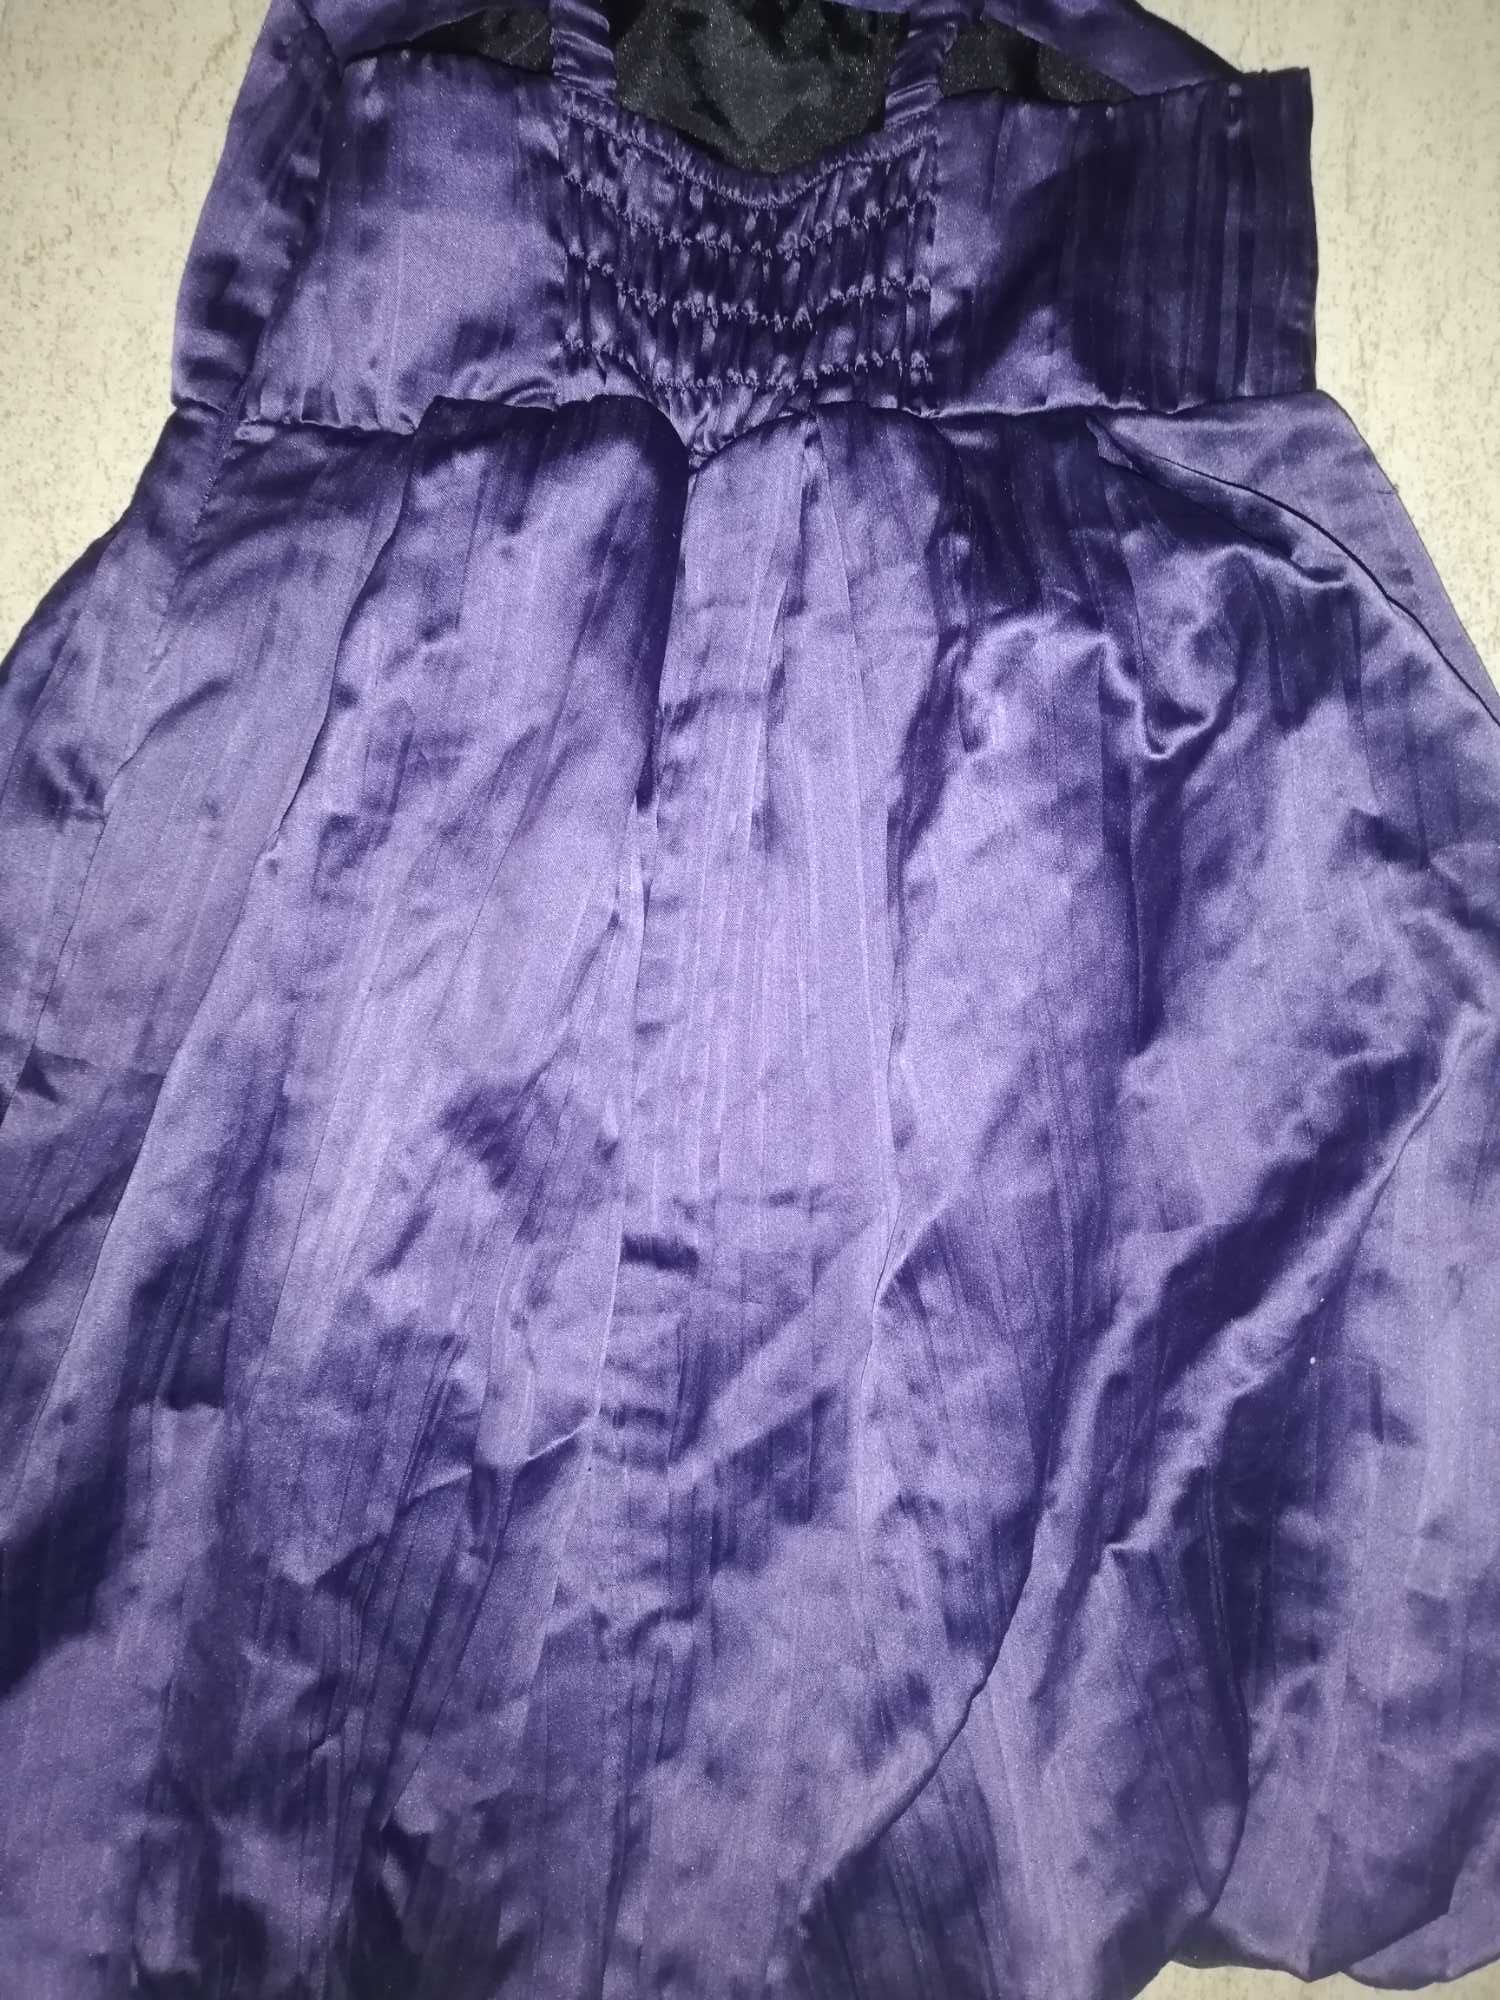 Fioletowa sukienka plisowana rozm. 122-134